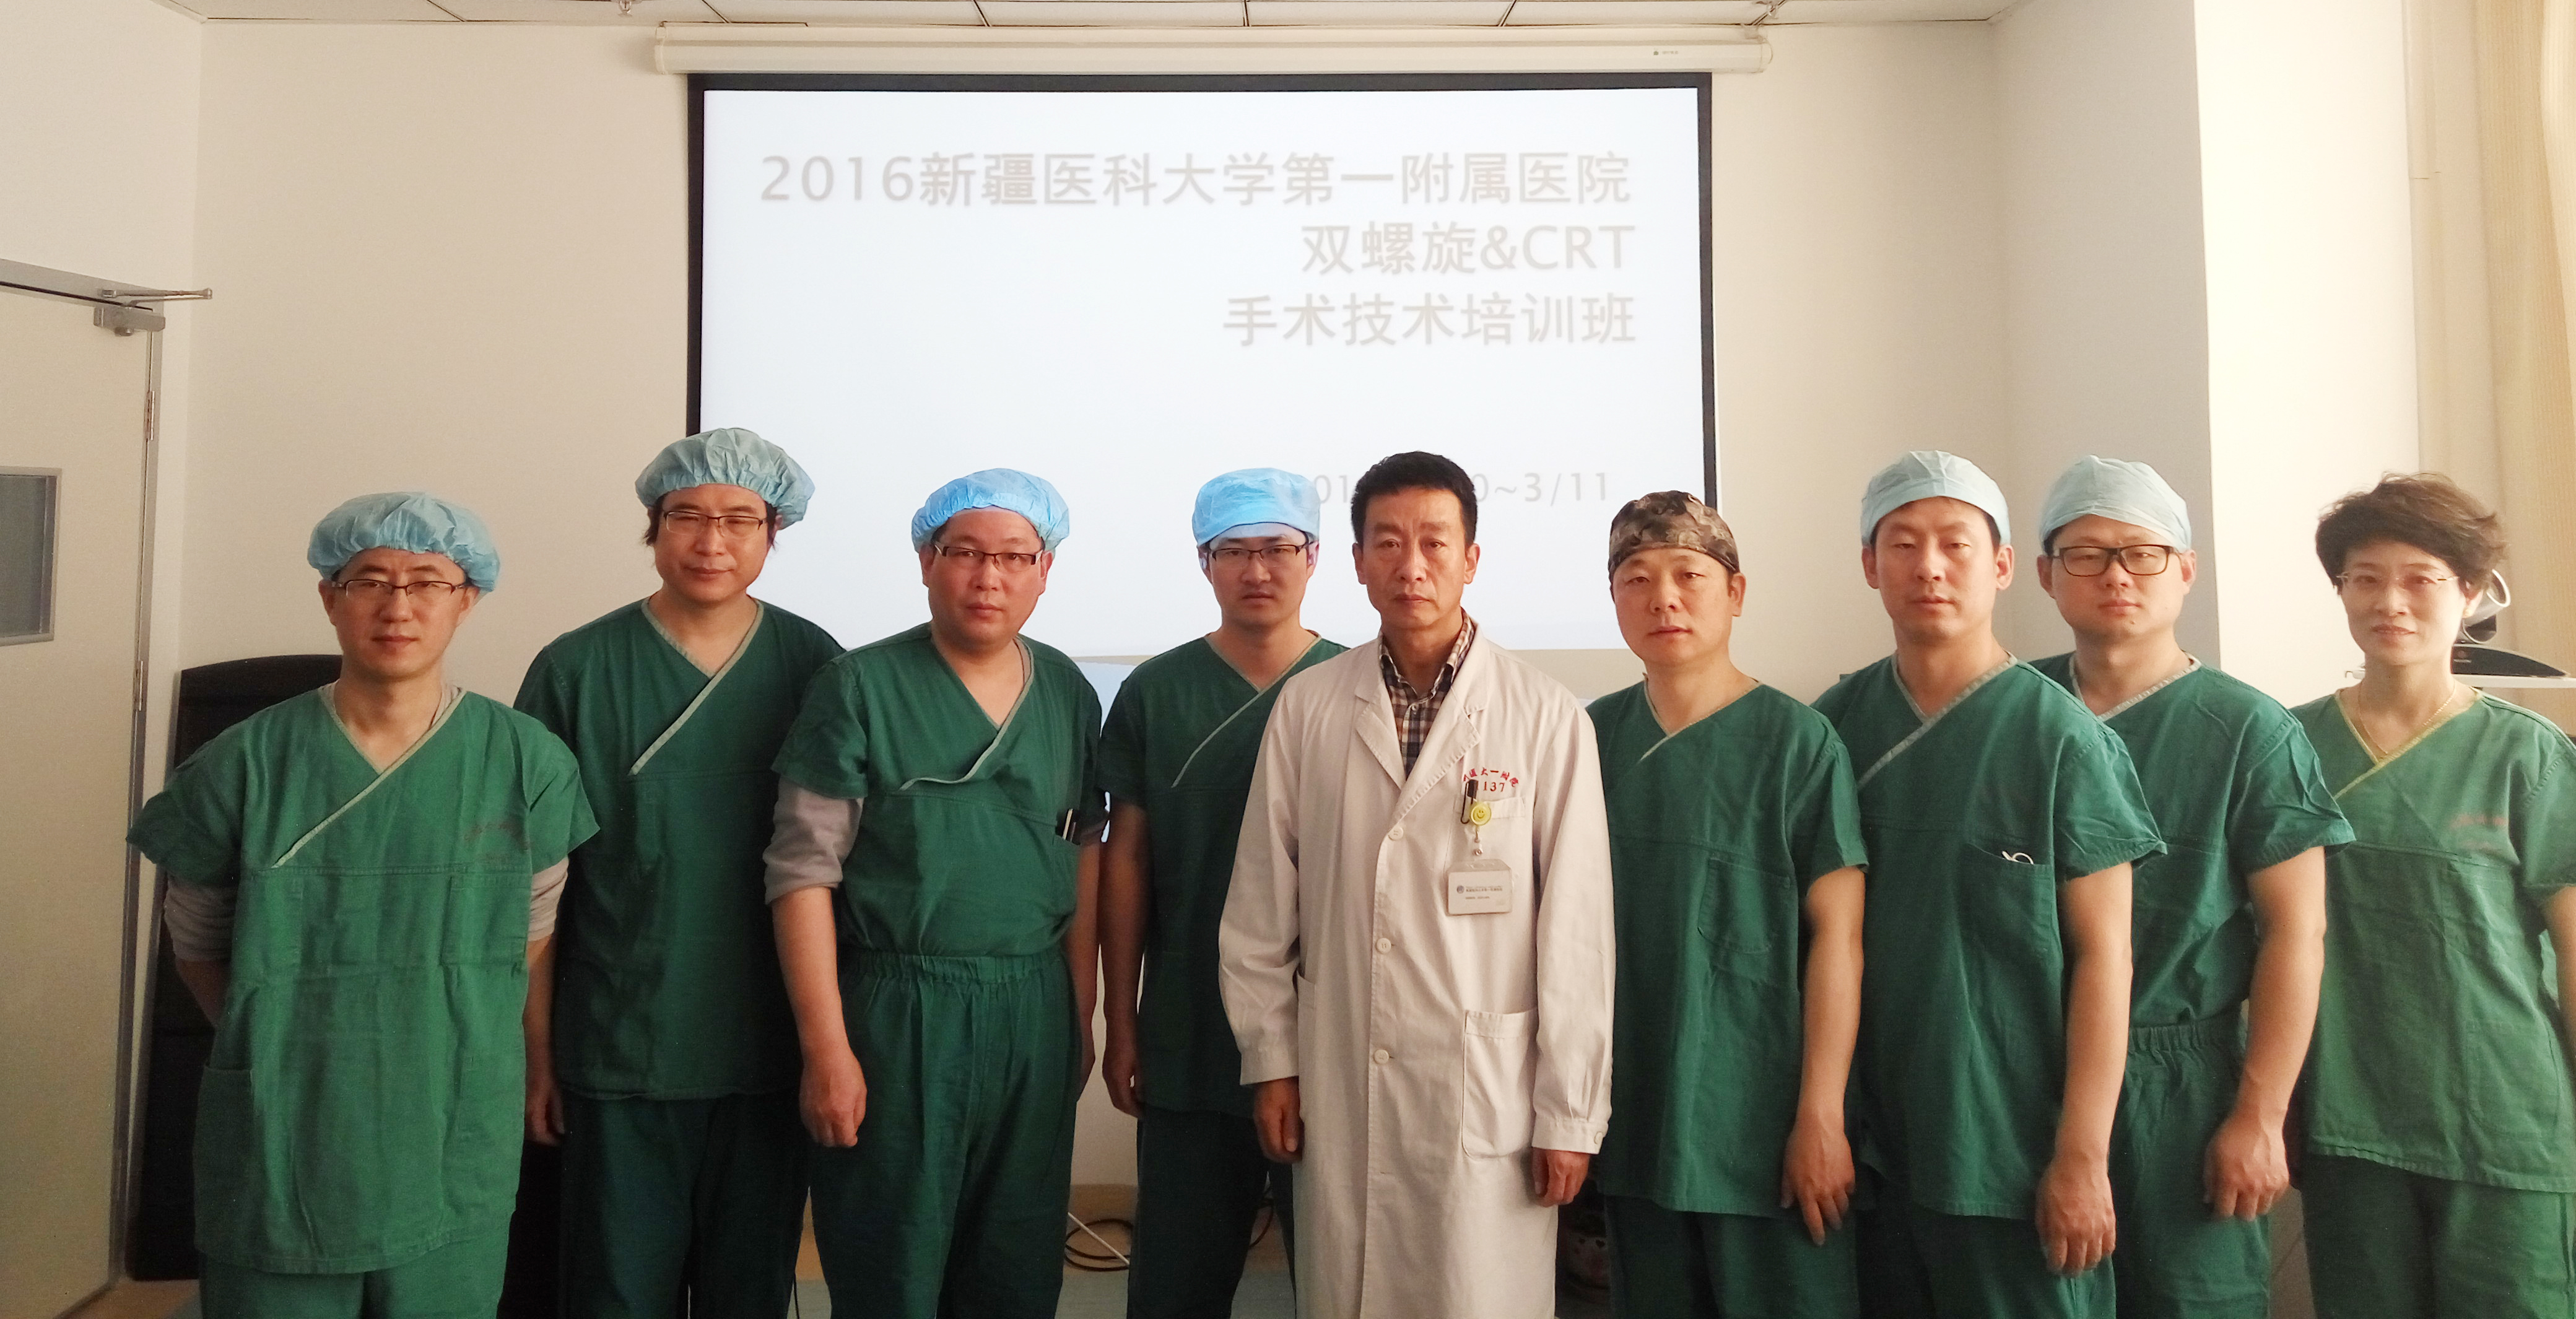 新疆医科大学第一附属医院双螺旋&CRT植入技术全国培训班顺利举办